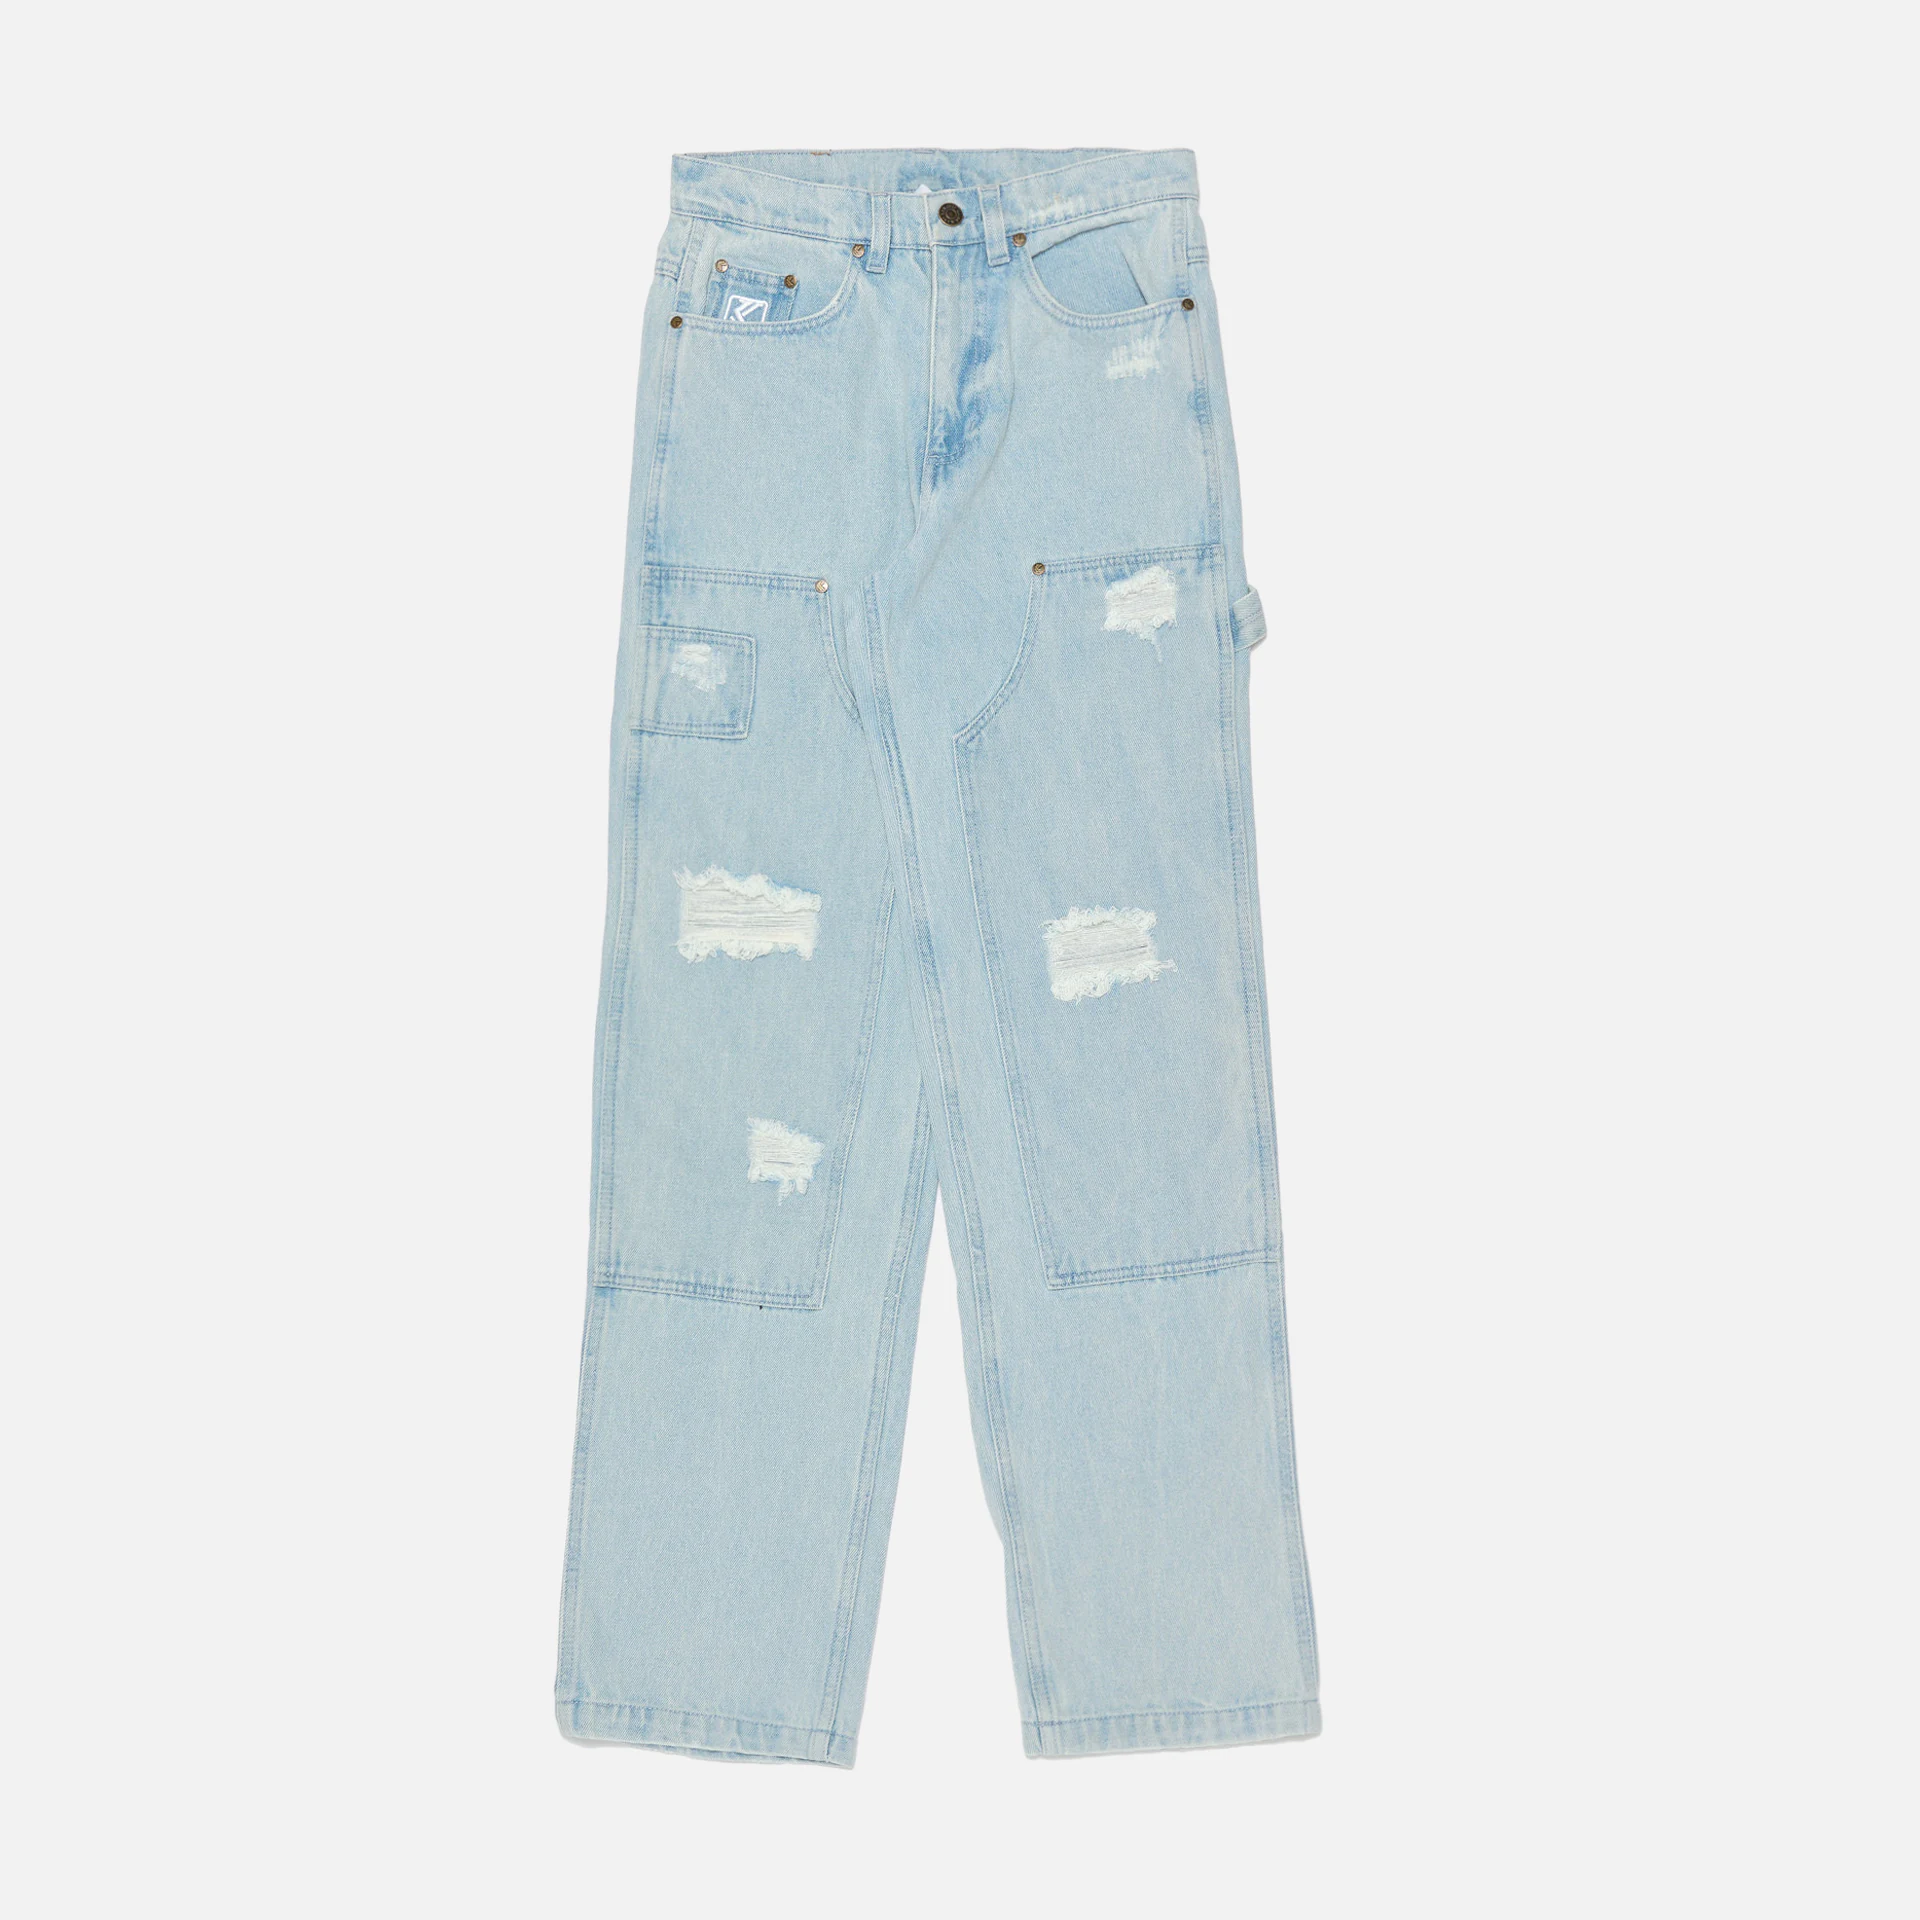 Karl Kani OG Heavy Distressed Carpenter Jeans Bleached Blue